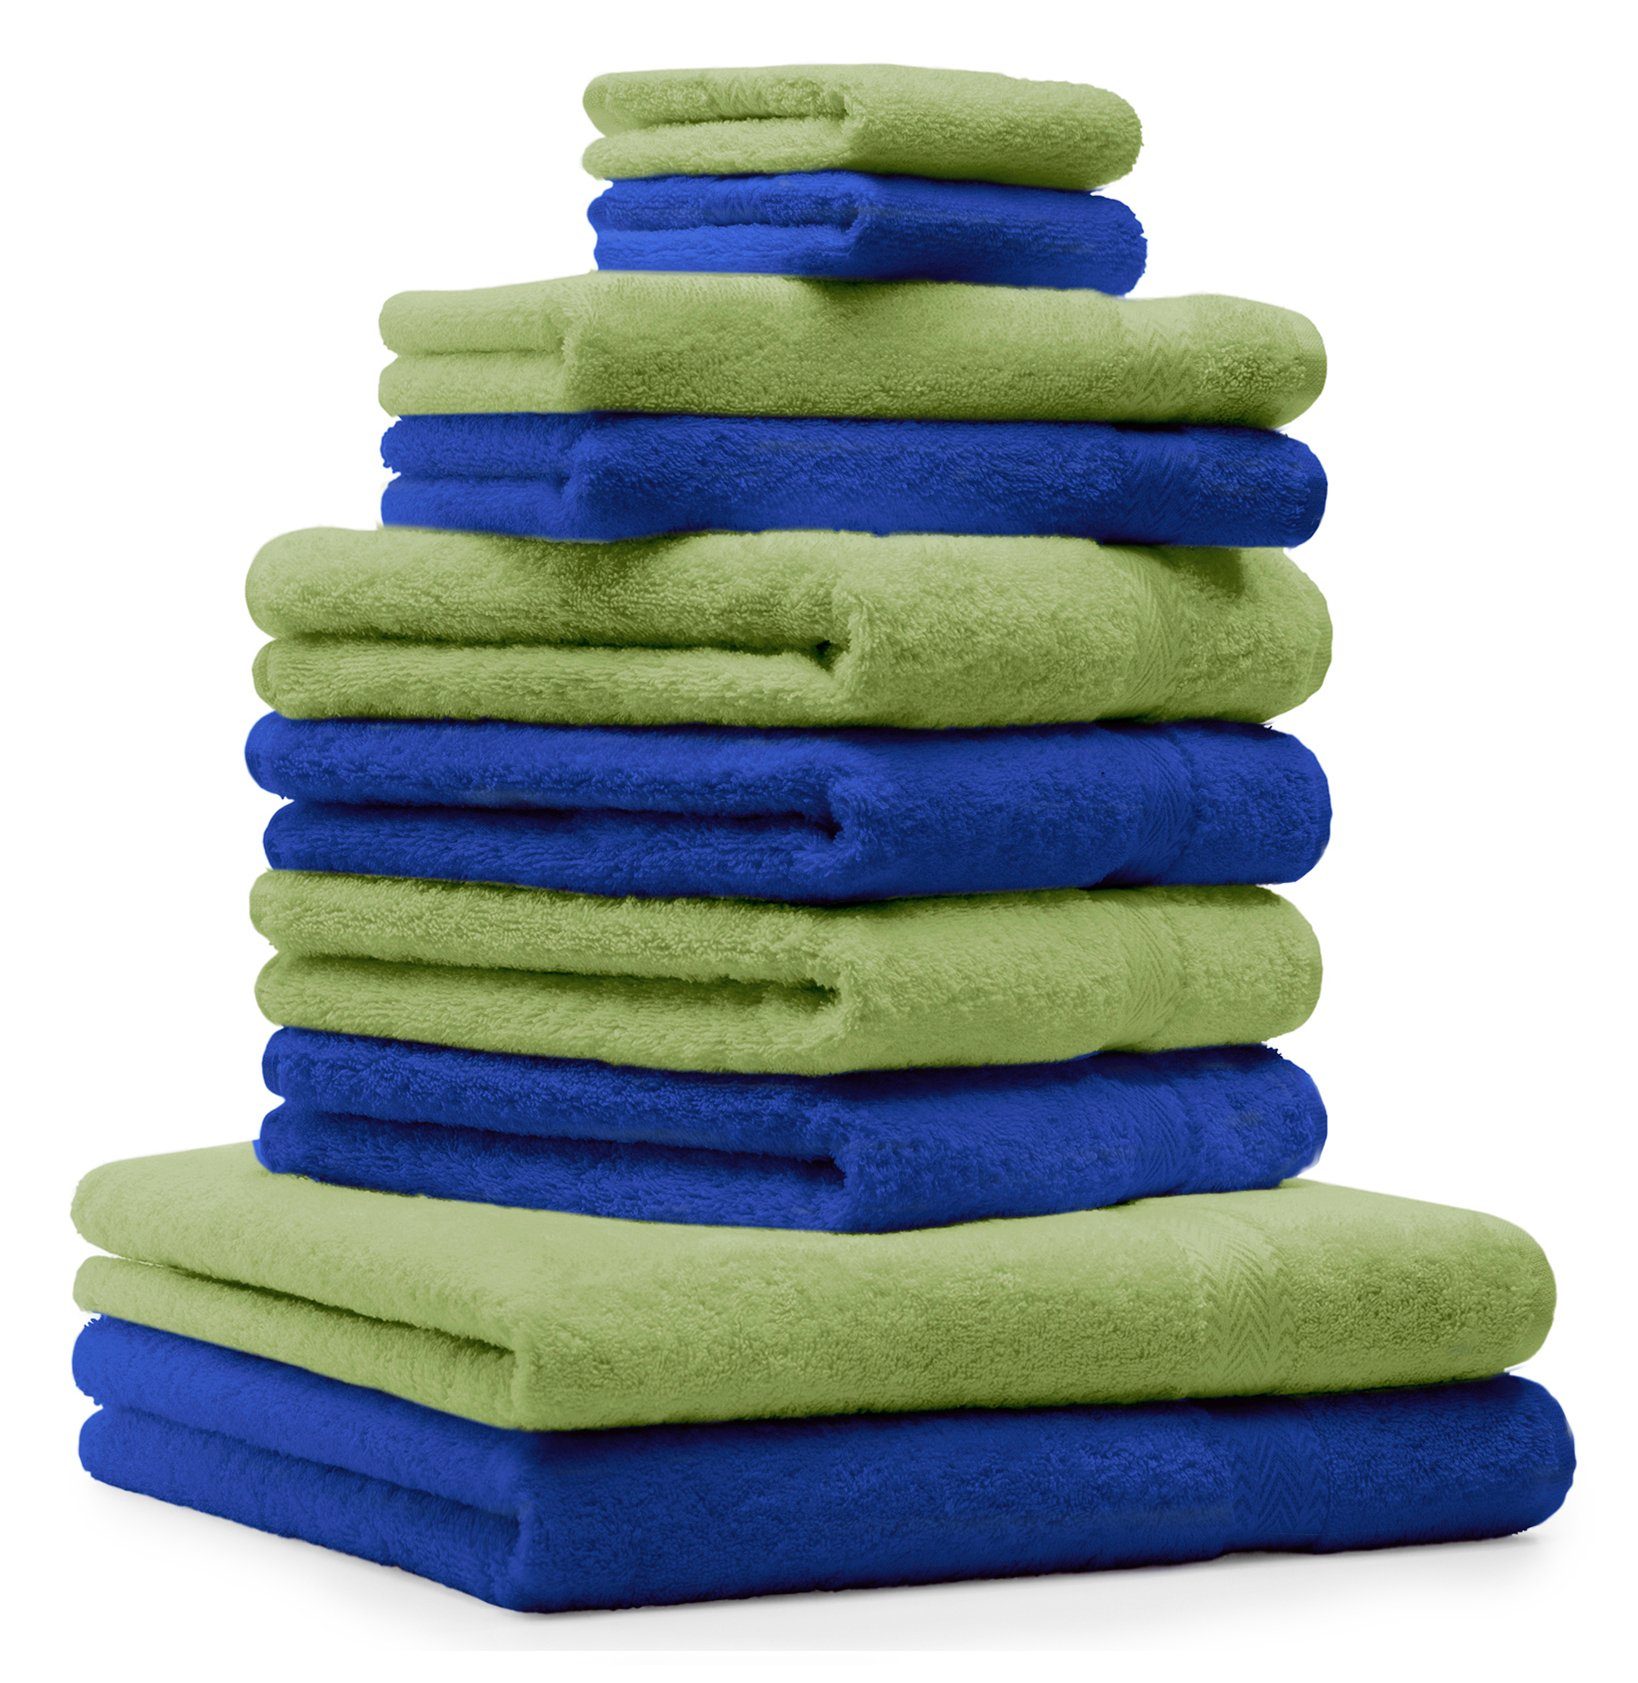 Baumwolle 100% & royalblau apfelgrün, Fb. Baumwolle Handtuch Set 100% CLASSIC 10-TLG. Betz Handtuch-Set